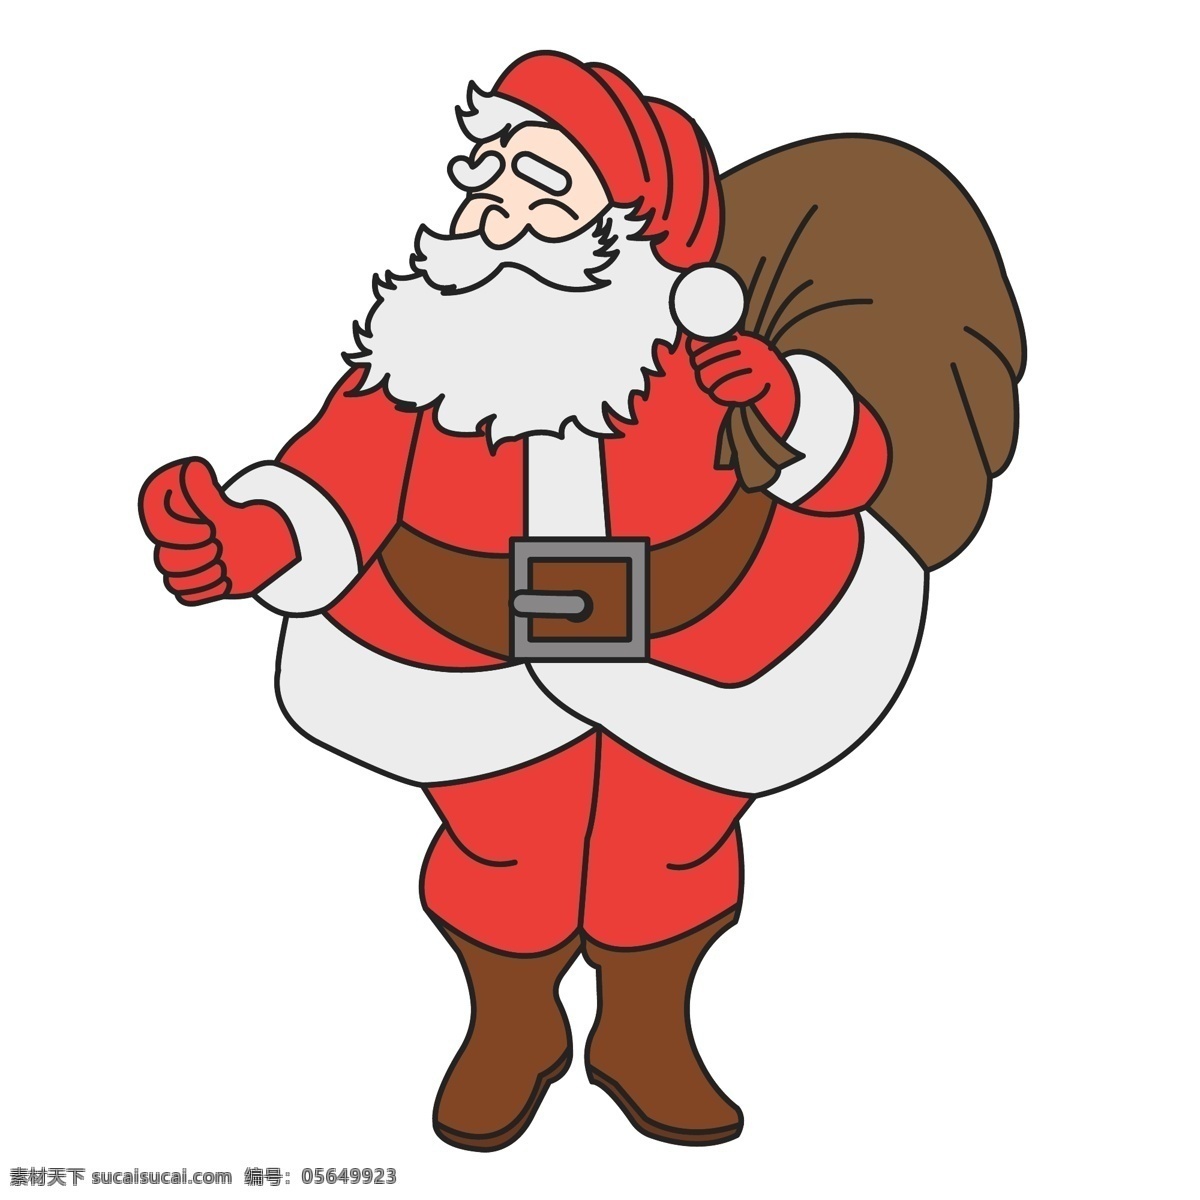 手绘 矢量 圣诞节 圣诞老人 送礼 物 可爱 礼物 卡通人物 圣诞夜 平安 小熊 祝福